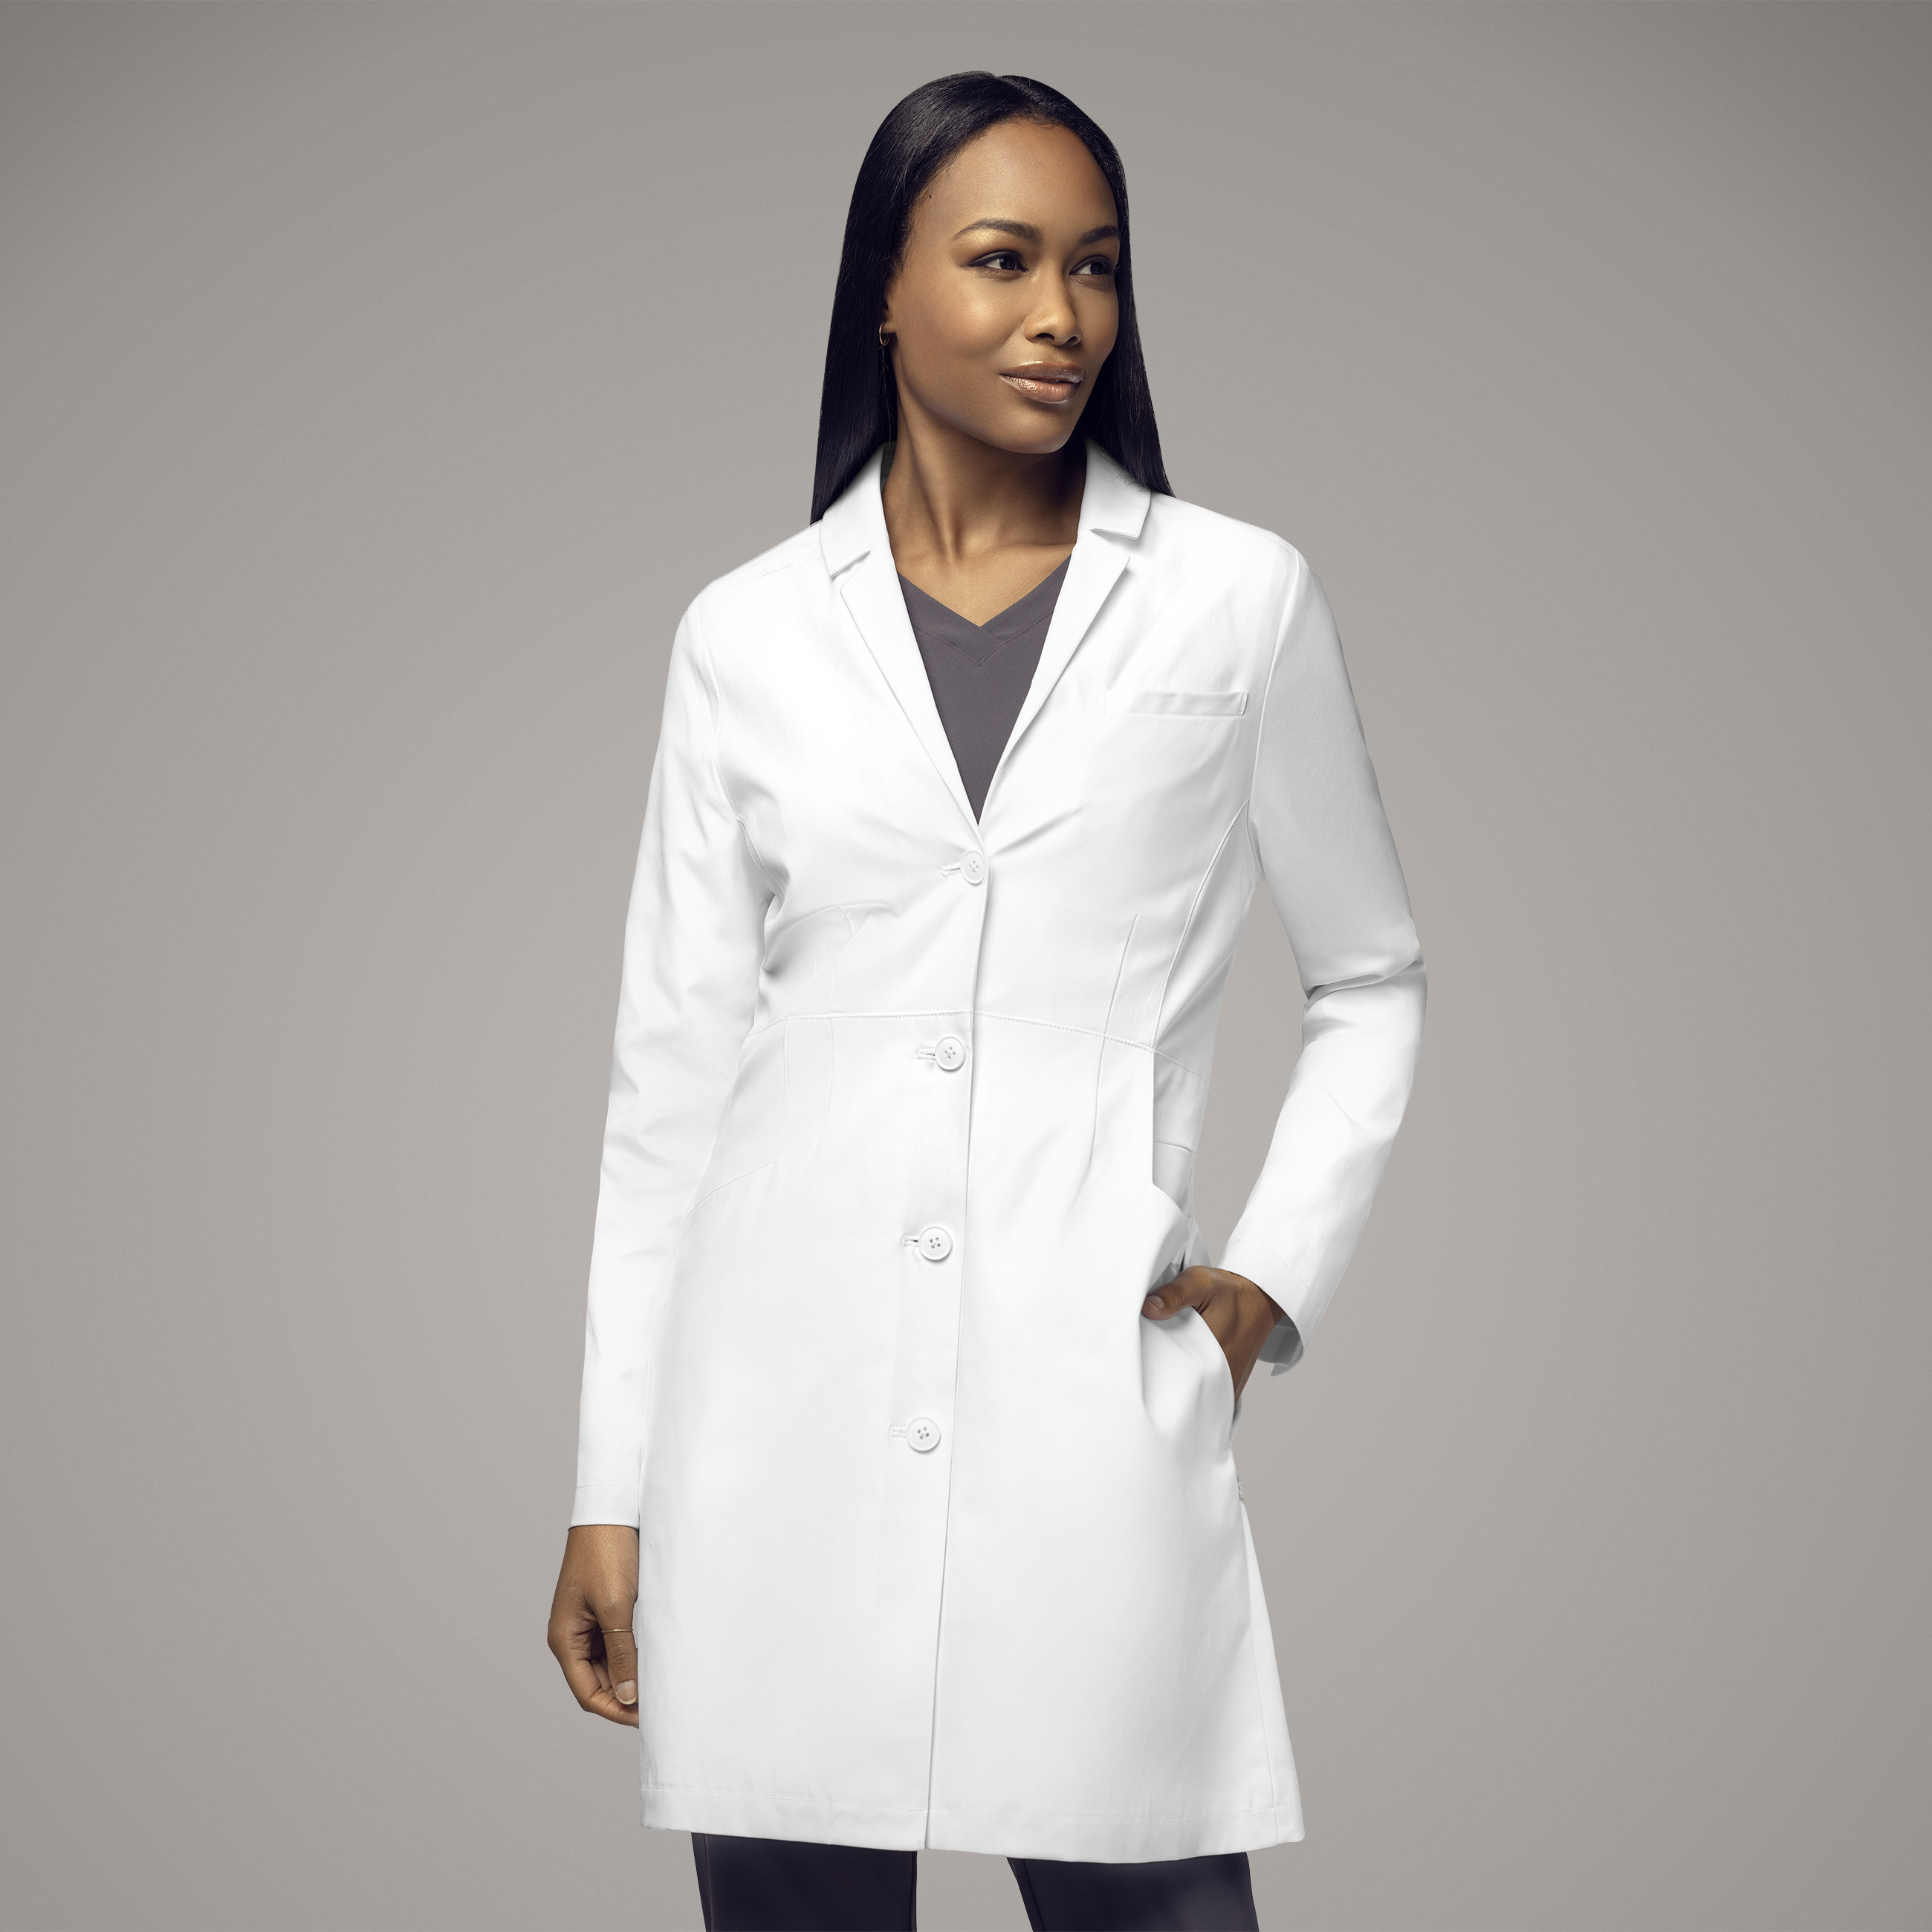 Wink Slate Women&#8216;s 35 Inch Doctors Coat-Wonder Wink